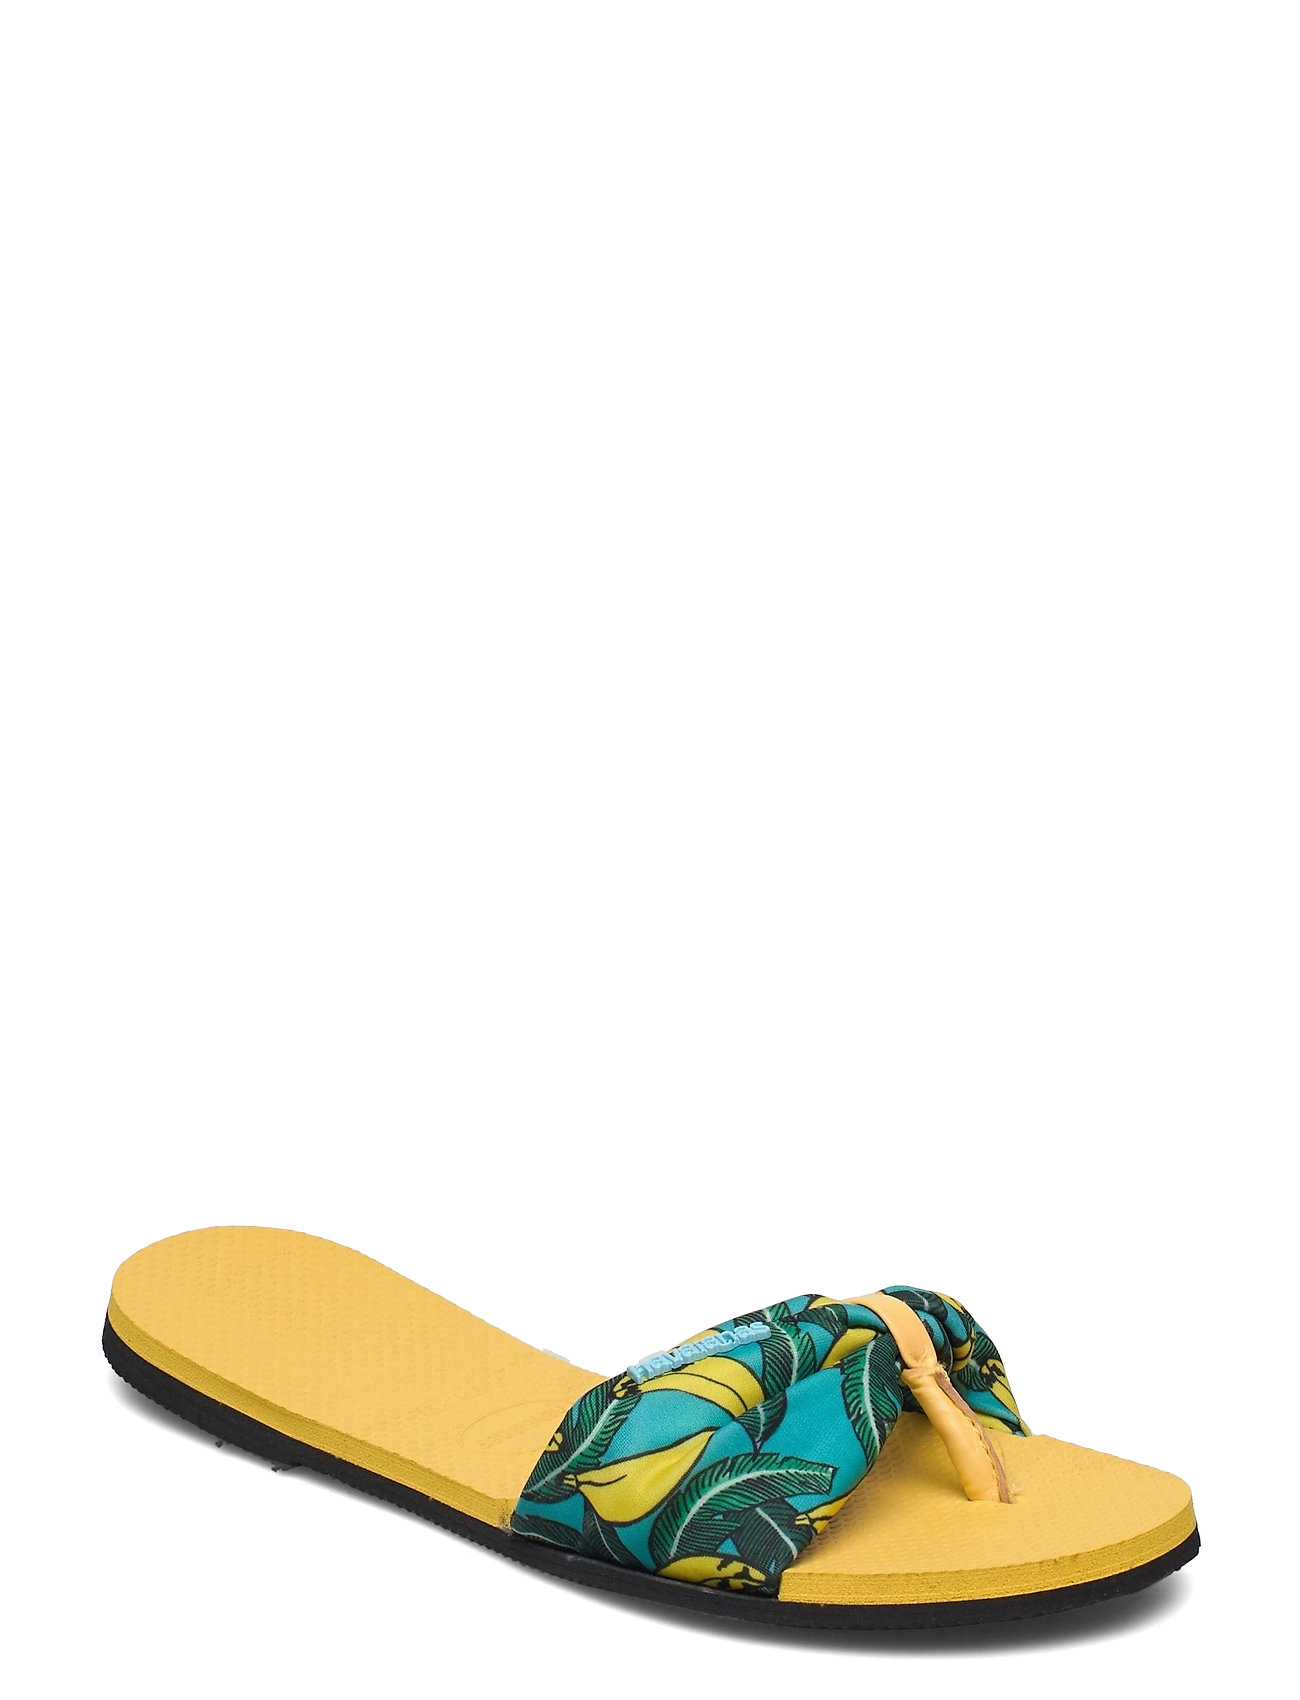 Hav You Saint Tropez Shoes Summer Shoes Flip Flops Keltainen Havaianas